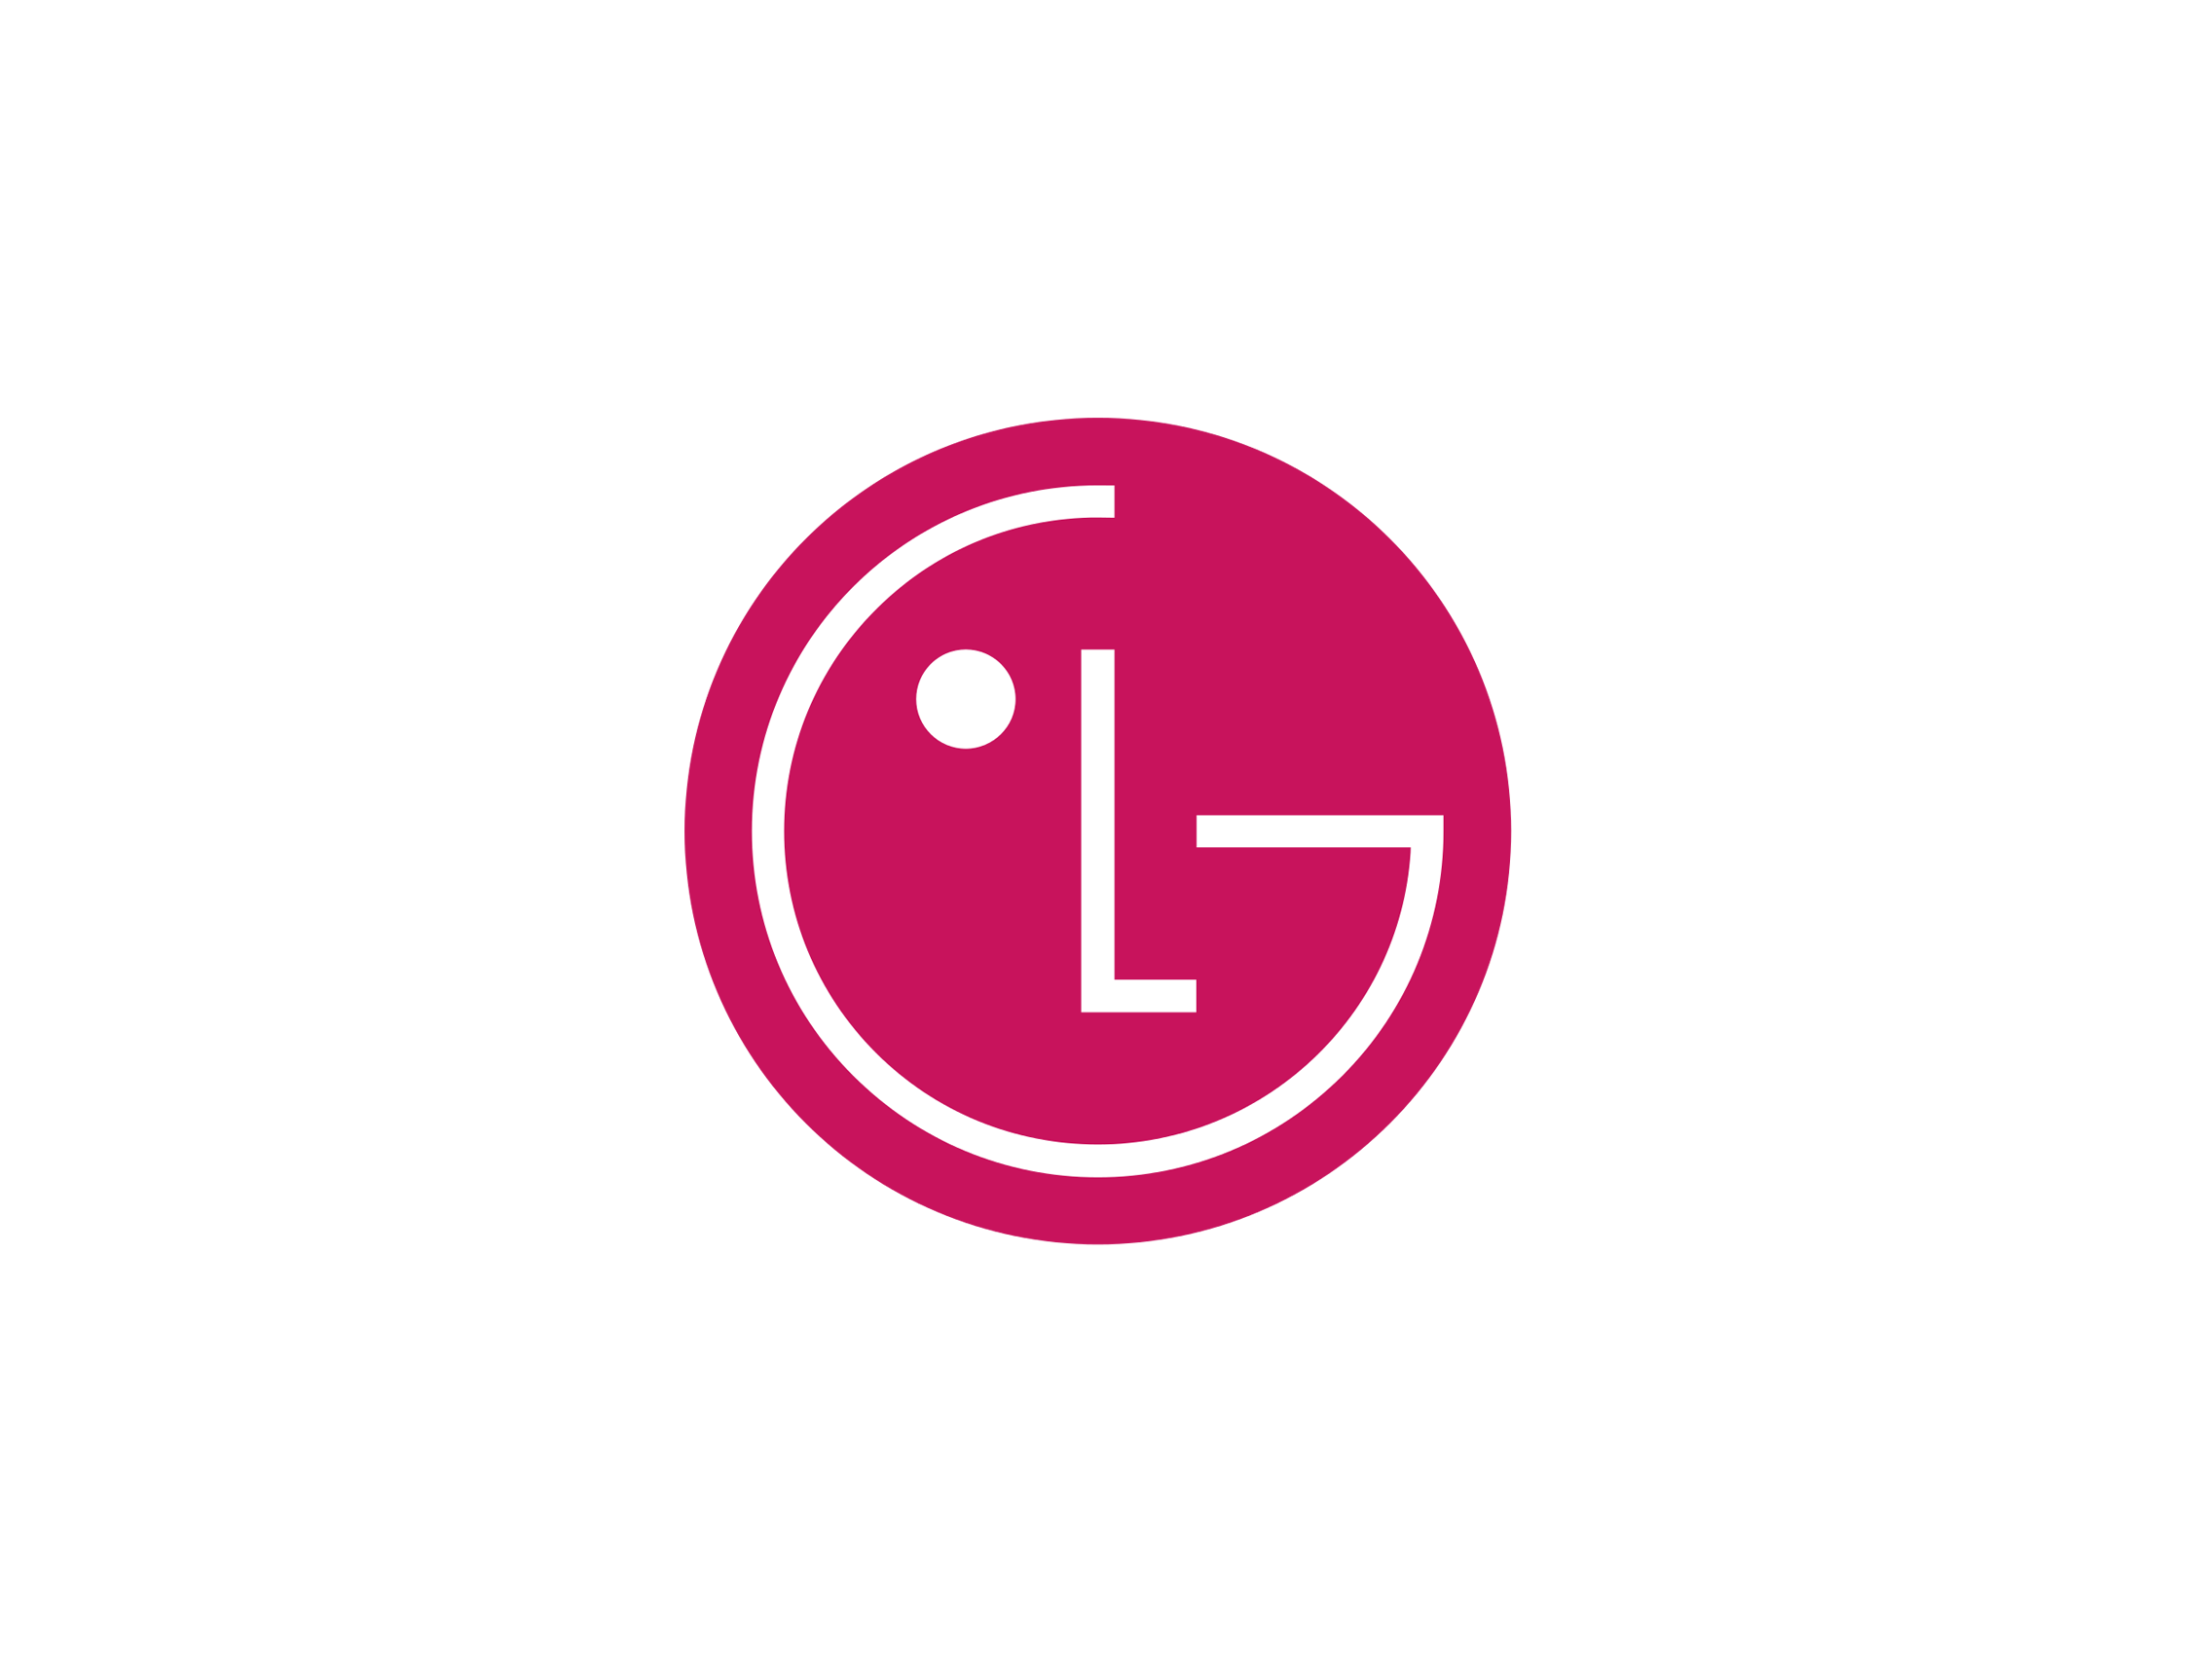 LG Phone Logo - Lg Logos